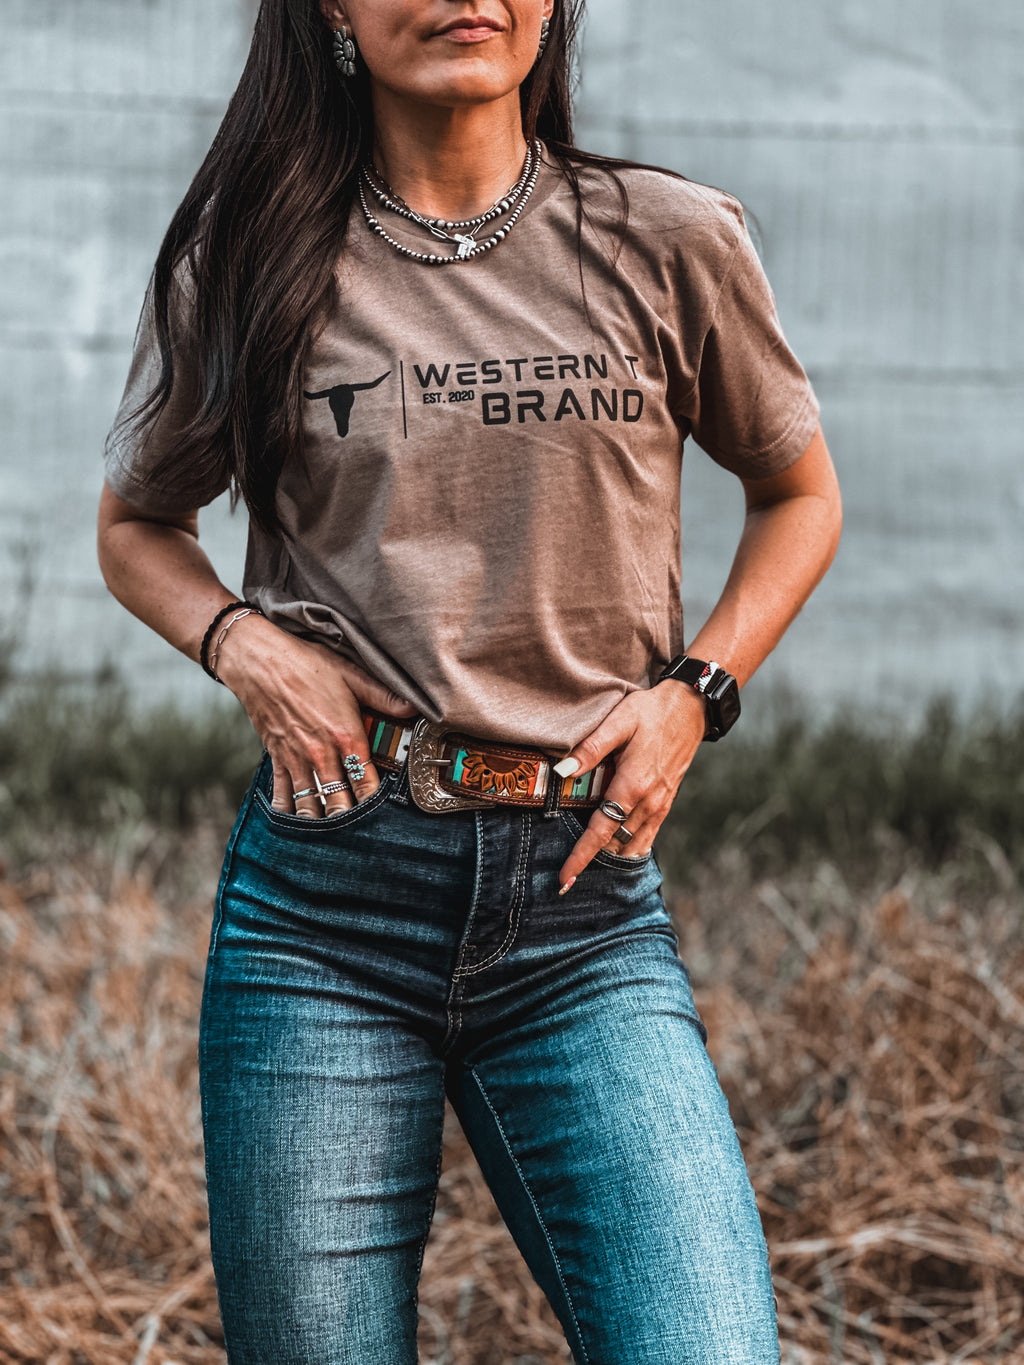 Western T Brand | Logo - Desert Sand